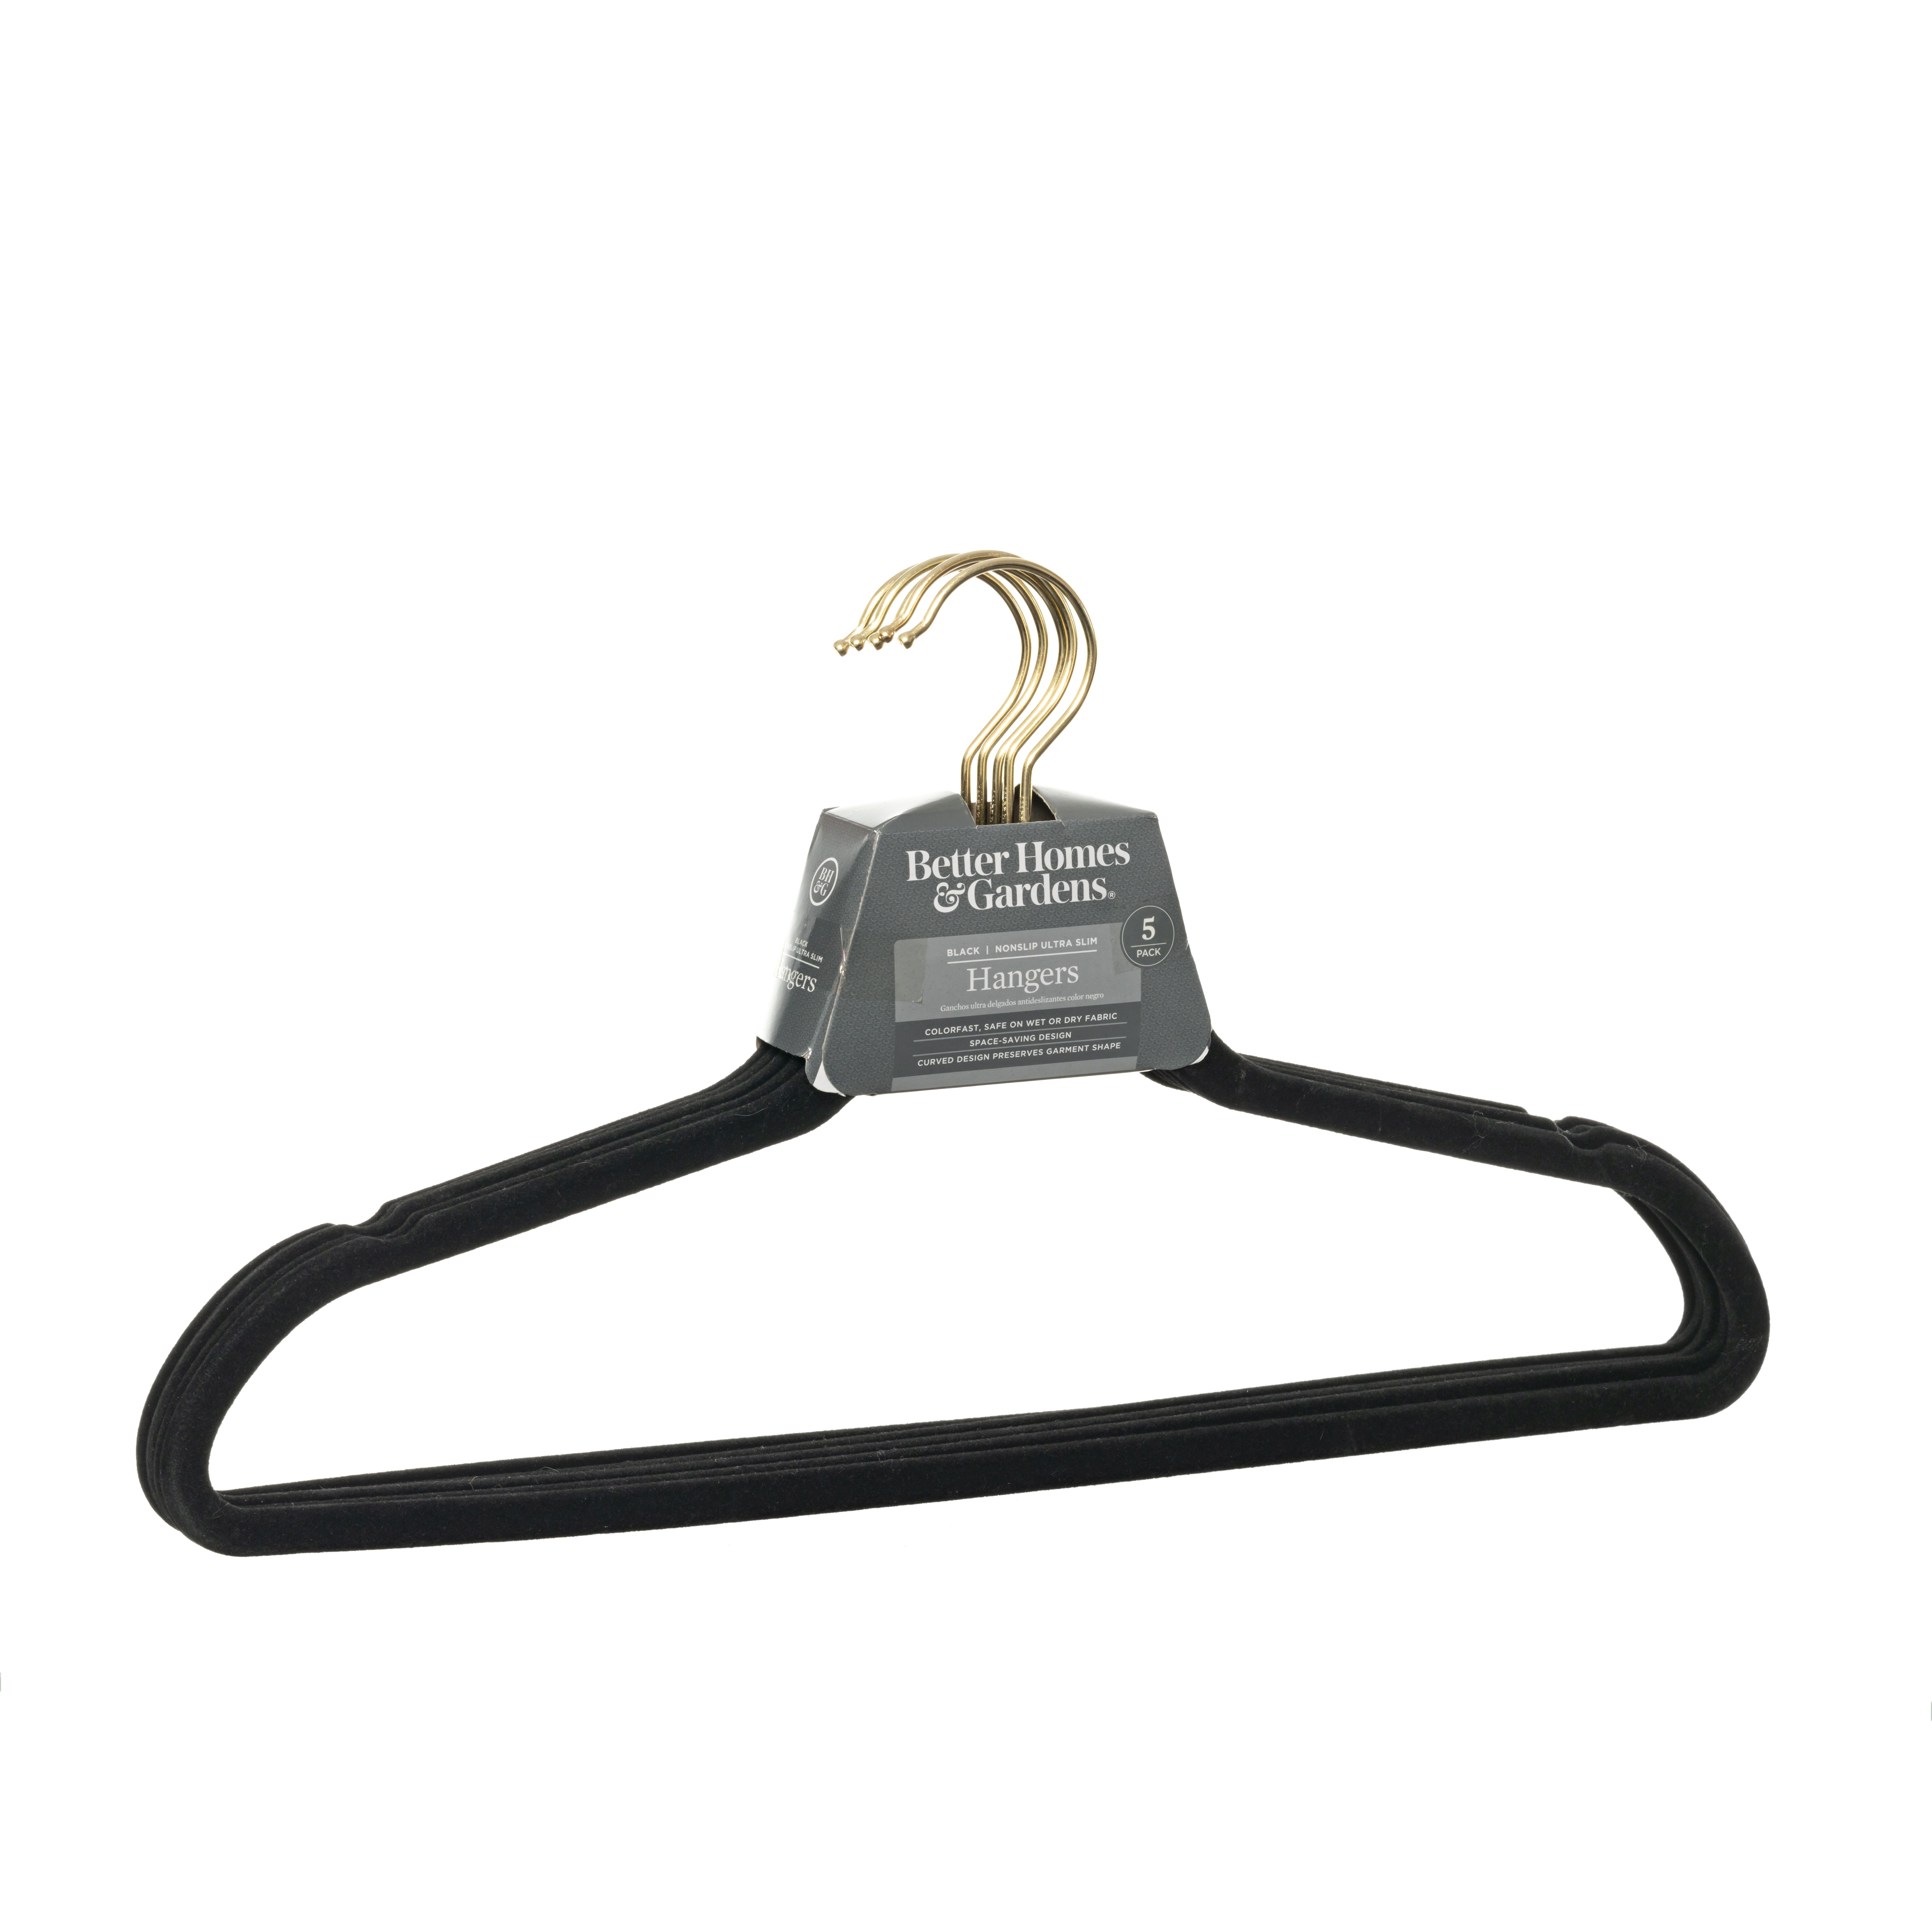 MAINSTAYS Nonslip Slim Plastic Hangers Space-Saving Design 10pcs 